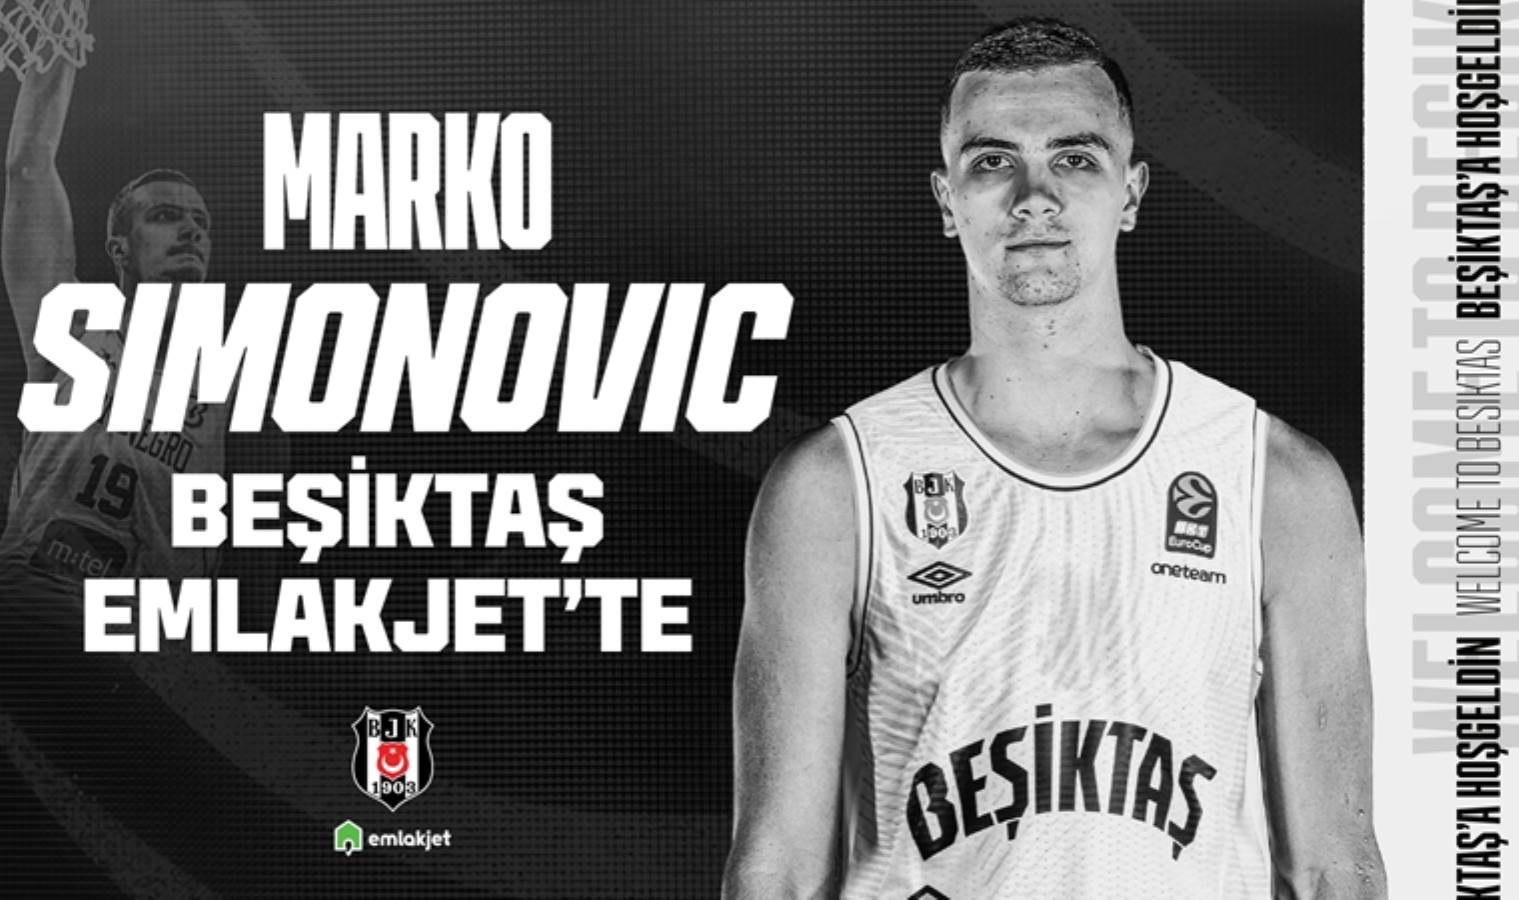 Beşiktaş Emlakjet, Marko Simonovic'i renklerine bağladı!